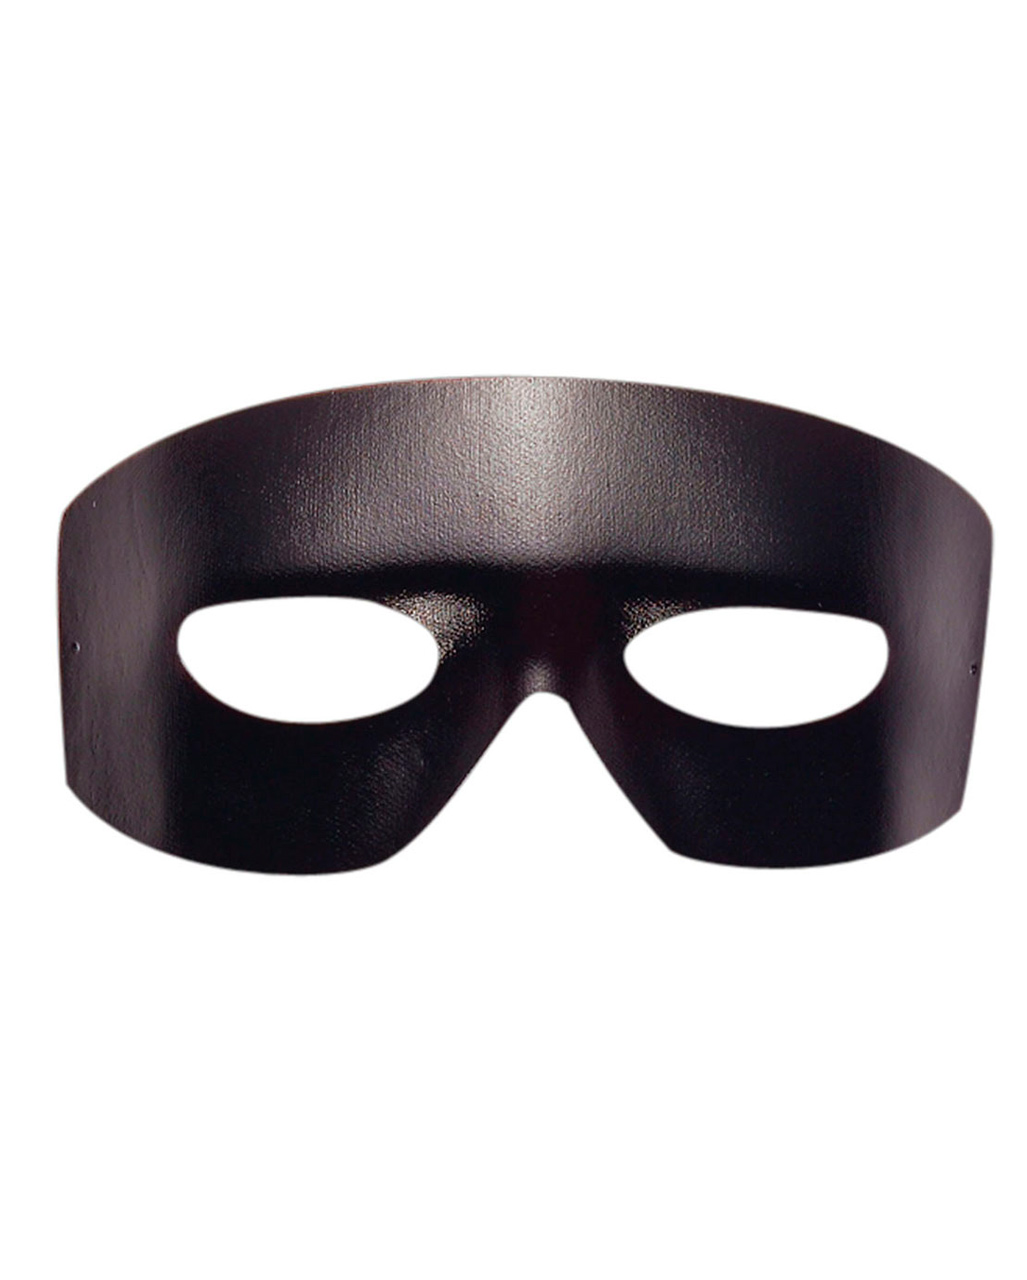 Zorro mask 